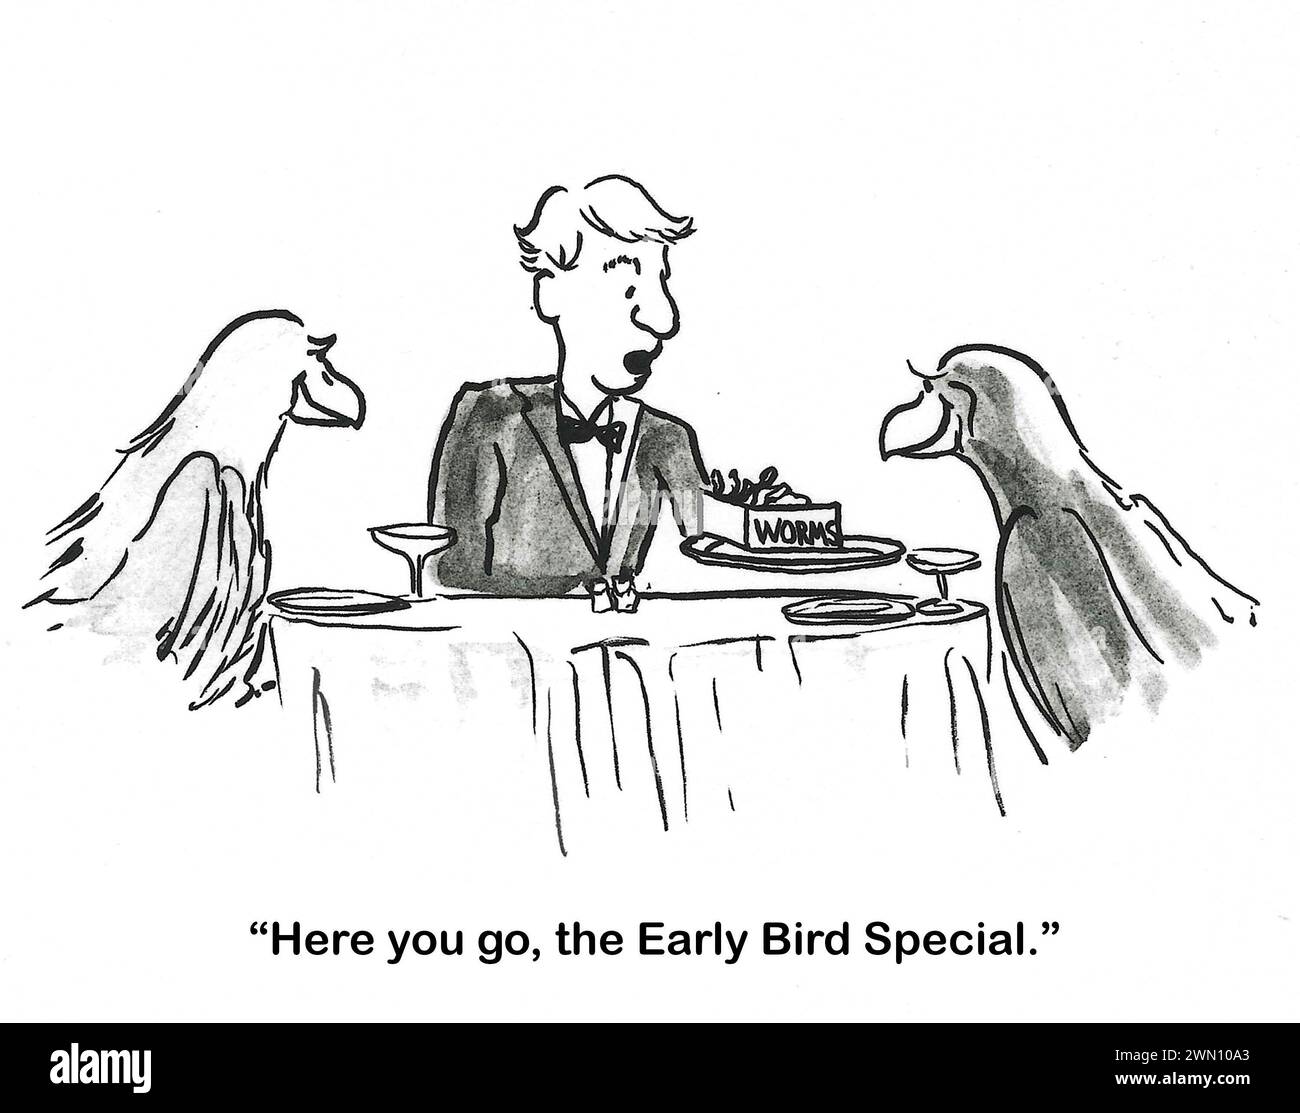 Fumetto BW di una coppia di uccelli in una cena al ristorante. Prendono i vermi. Foto Stock